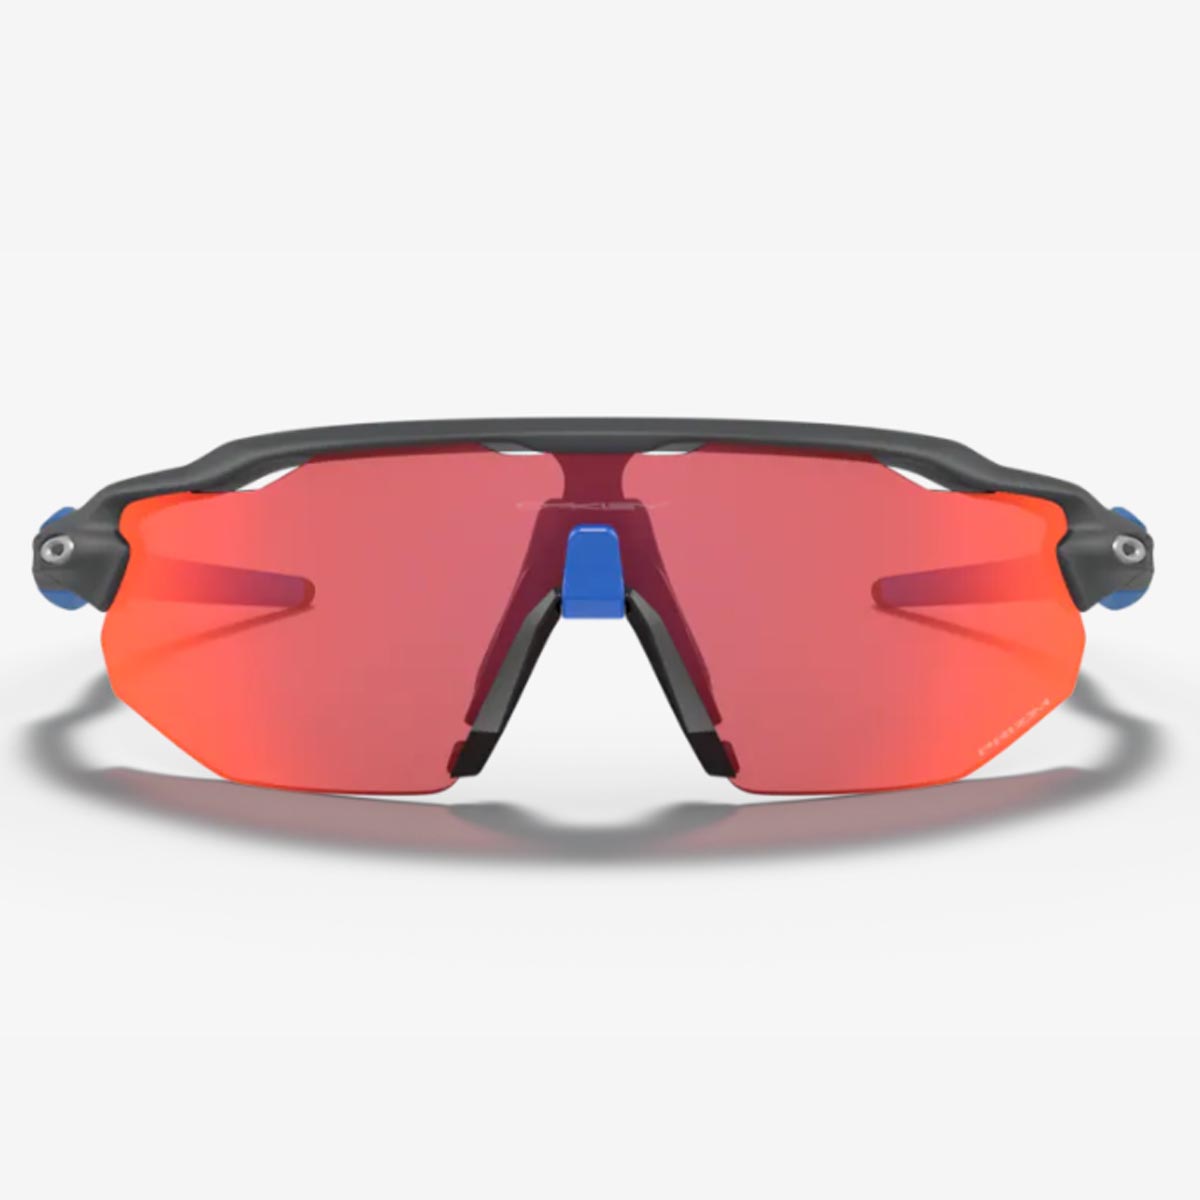 Oculos Para Ciclismo Oakley Radar Ev Advancer Cinza Carbon Fosco e Azul com Lente Prizm Trail Torch Espelhada Vermelha